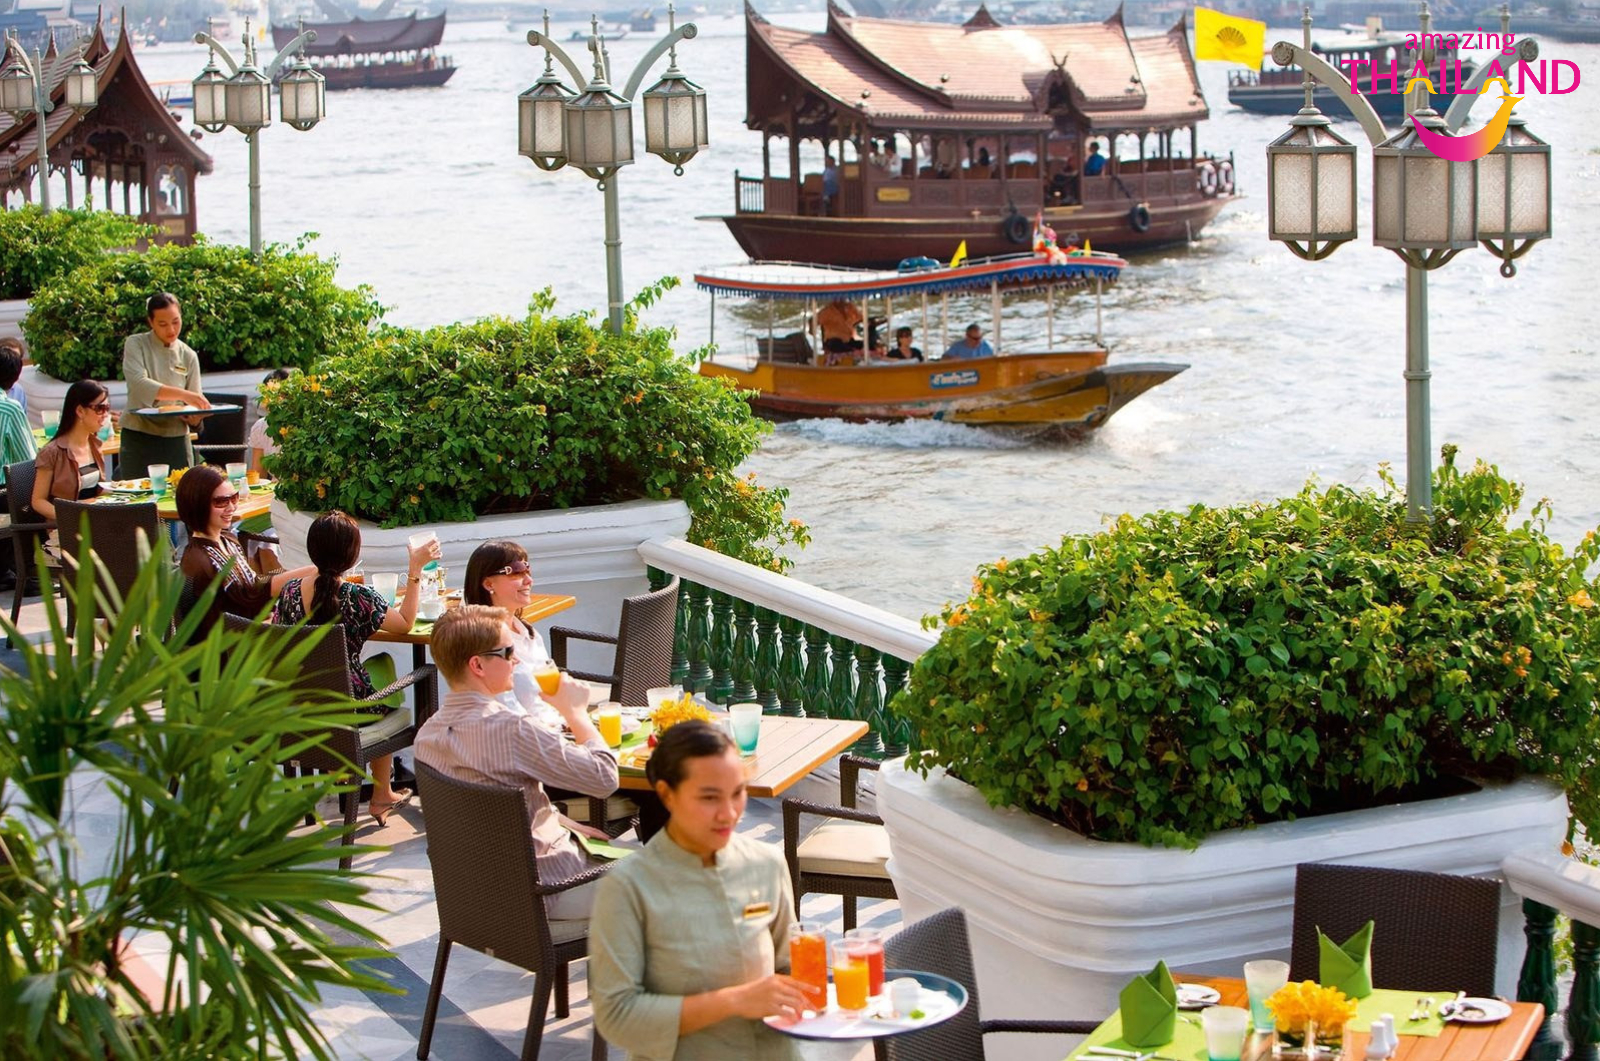 Khách du lịch ngồi thưởng thức đồ uống bên bờ sông Chao Phraya tại Bangkok, Thái Lan.